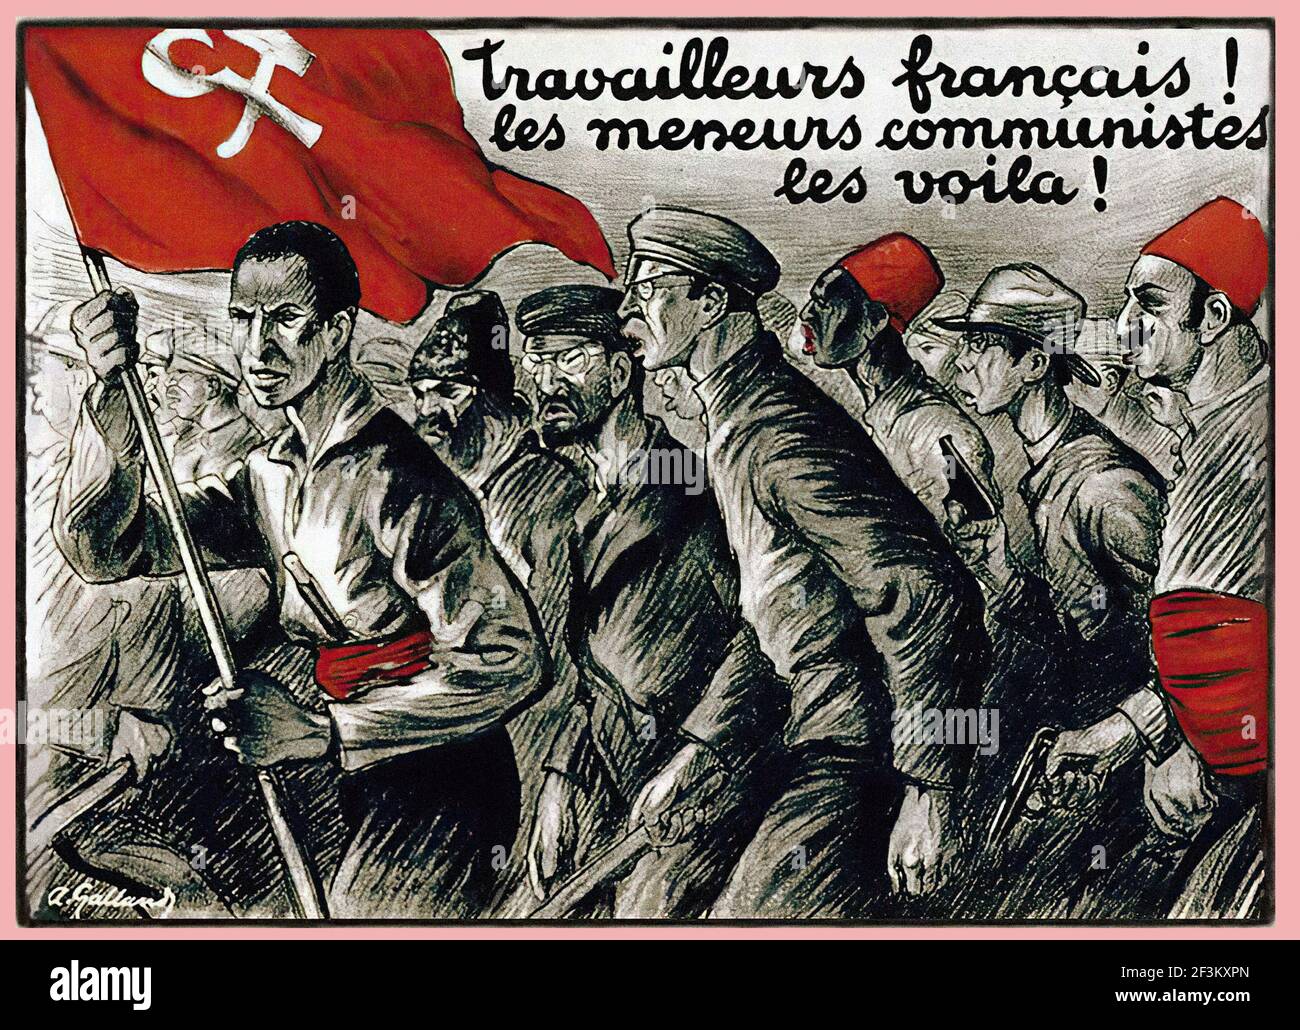 Manifesto francese di propaganda anticomunista. I lavoratori della Francia! Guarda come appaiono i leader comunisti! Francia, 1927 Foto Stock